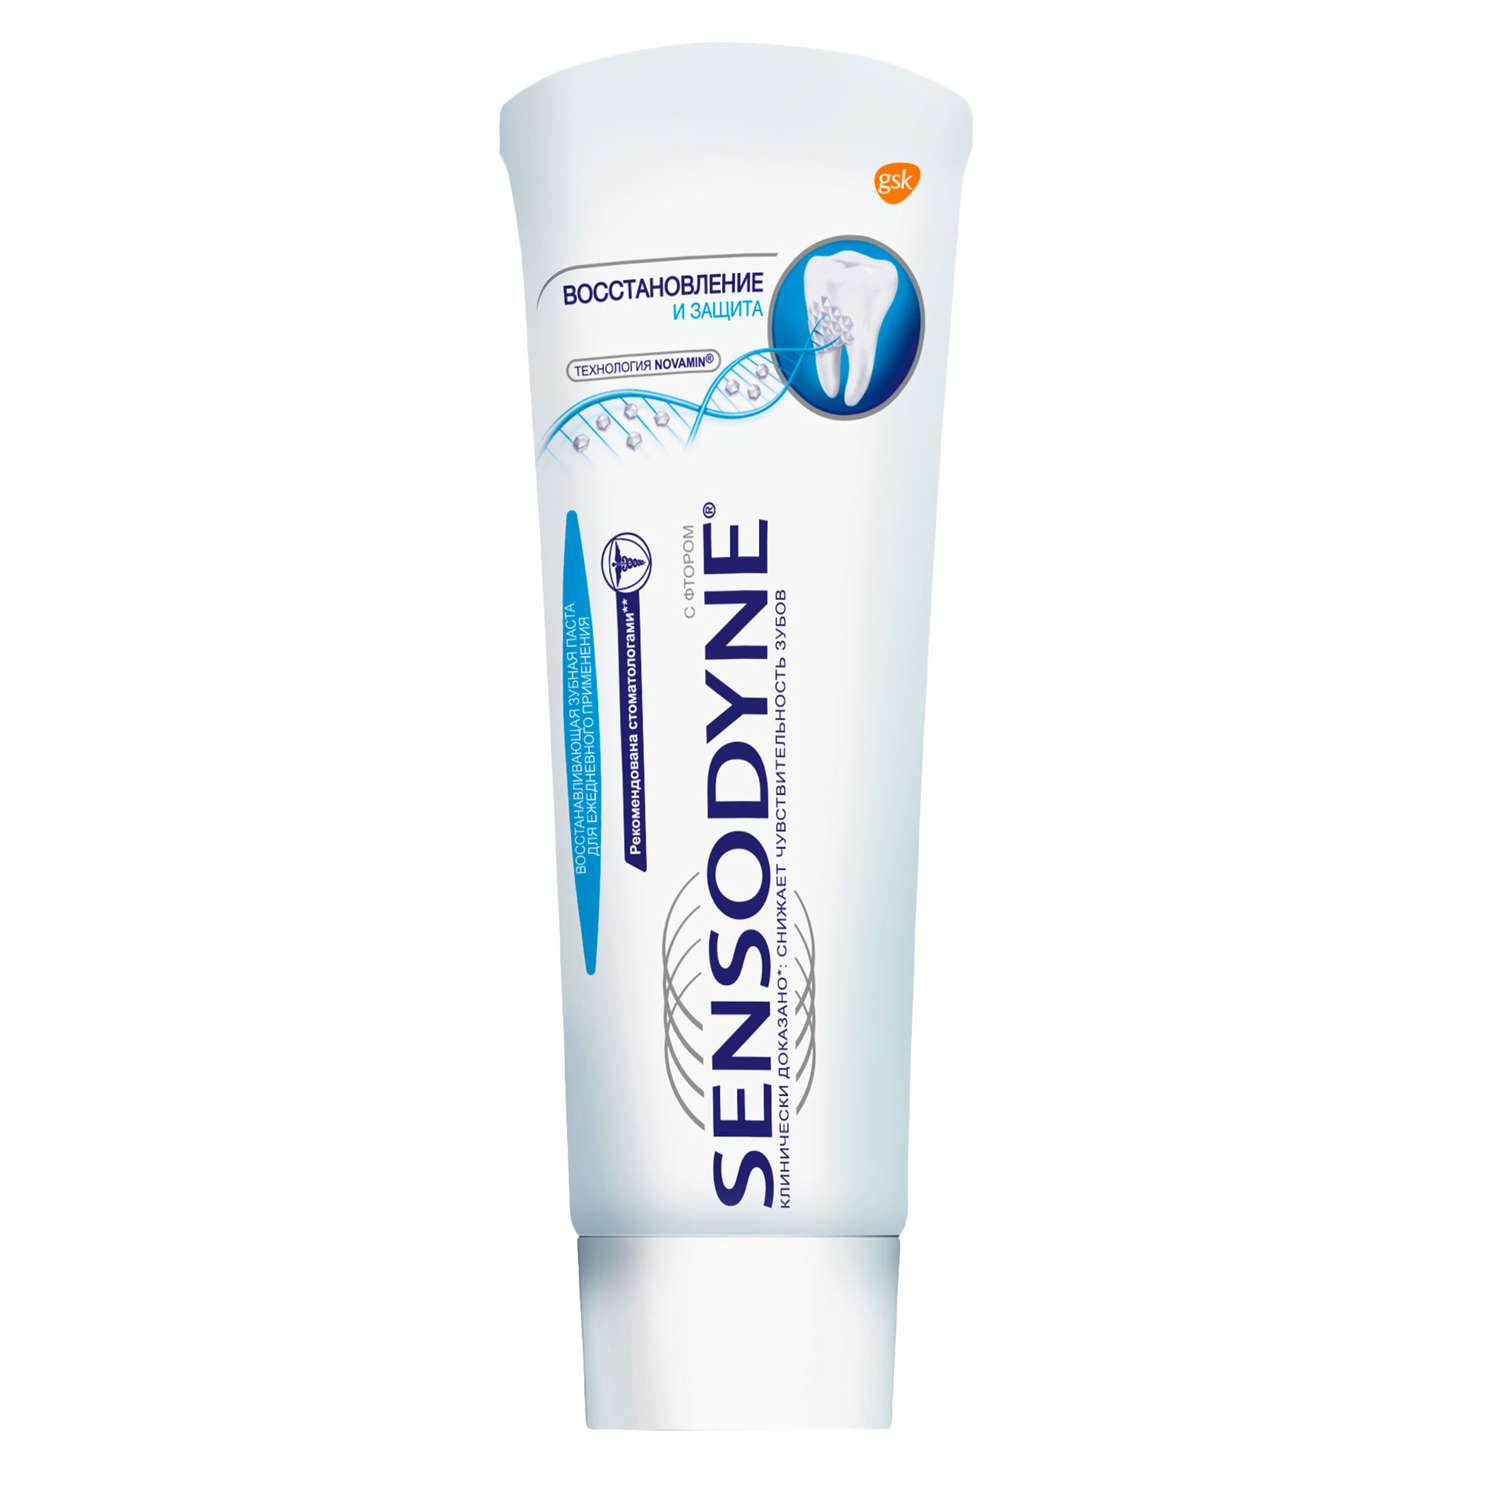 Зубная паста Sensodyne Восстановление и Защита 75 мл - фото 7